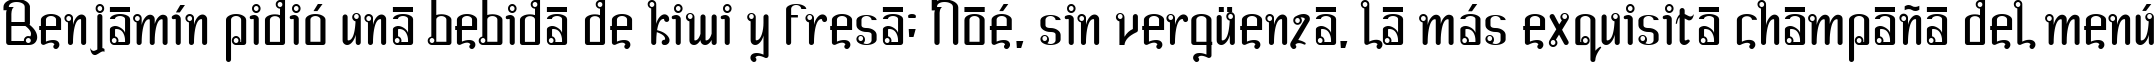 Пример написания шрифтом Farang текста на испанском